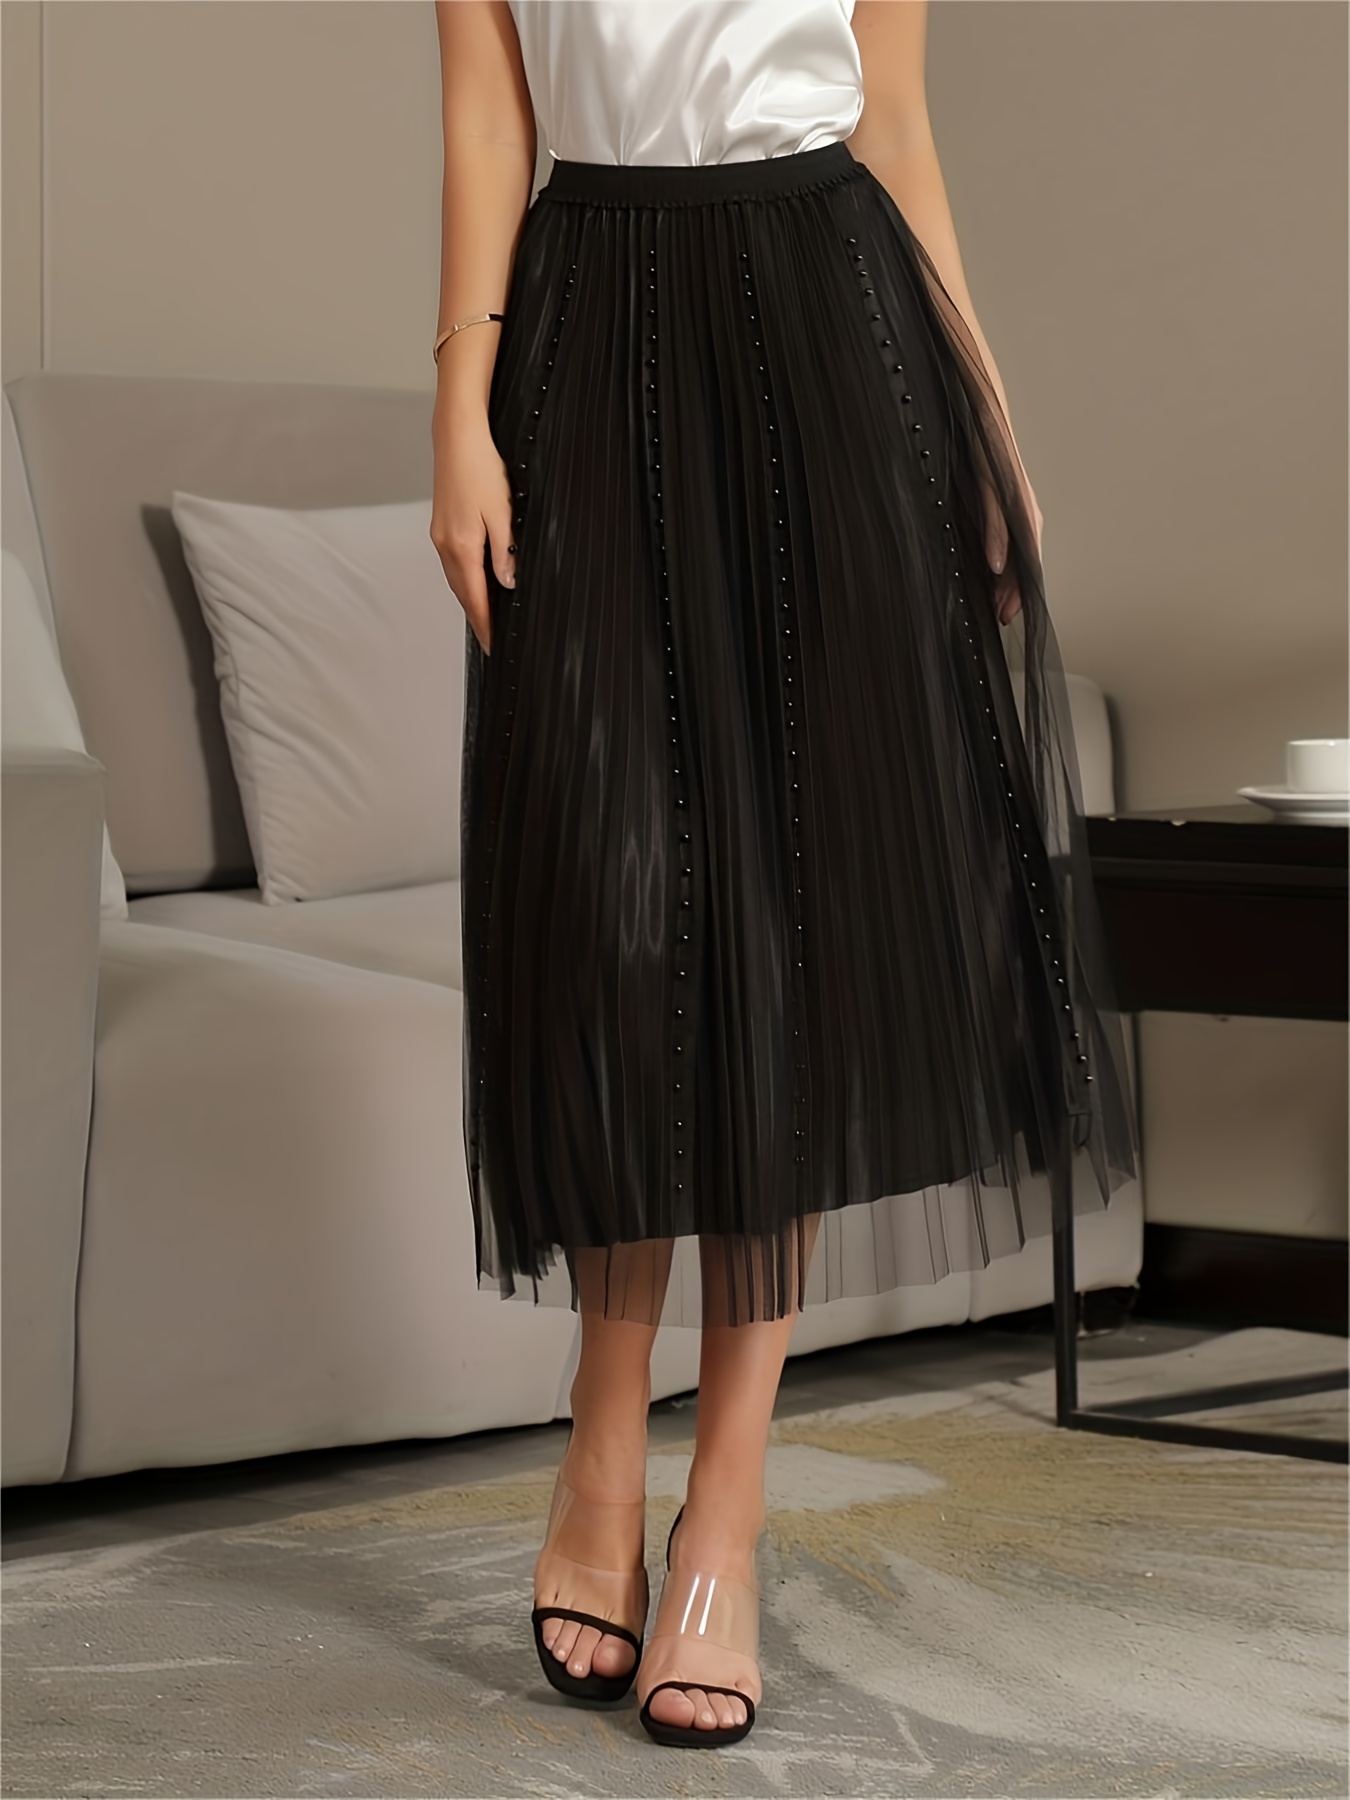 New Arrival Mesh Tutu Skirt For Women, Elegant Pleated Skirt With Lining